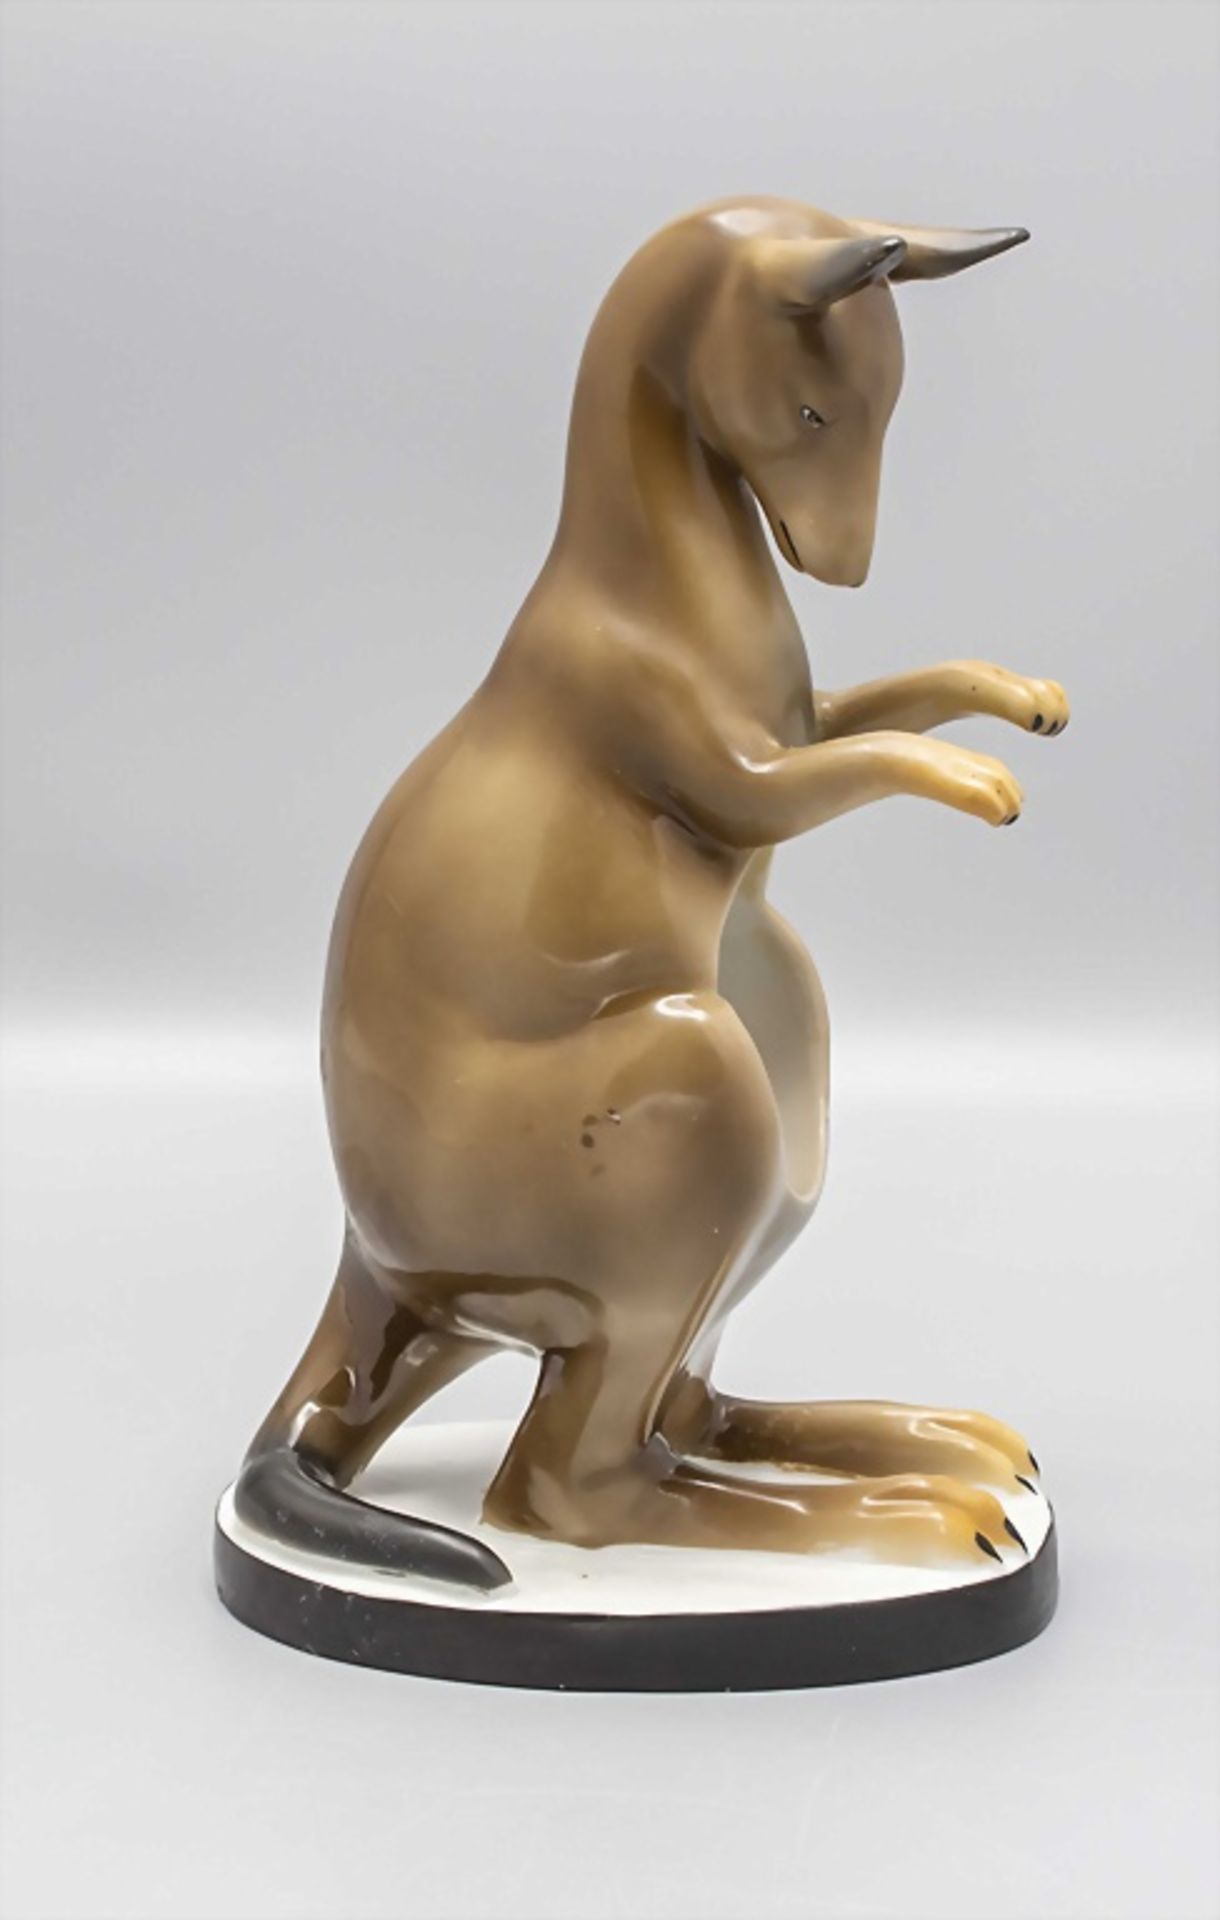 Porzallan Känguru als Halter / A porcelain kangaroo as holder, Anfang 20. Jh. - Bild 3 aus 6